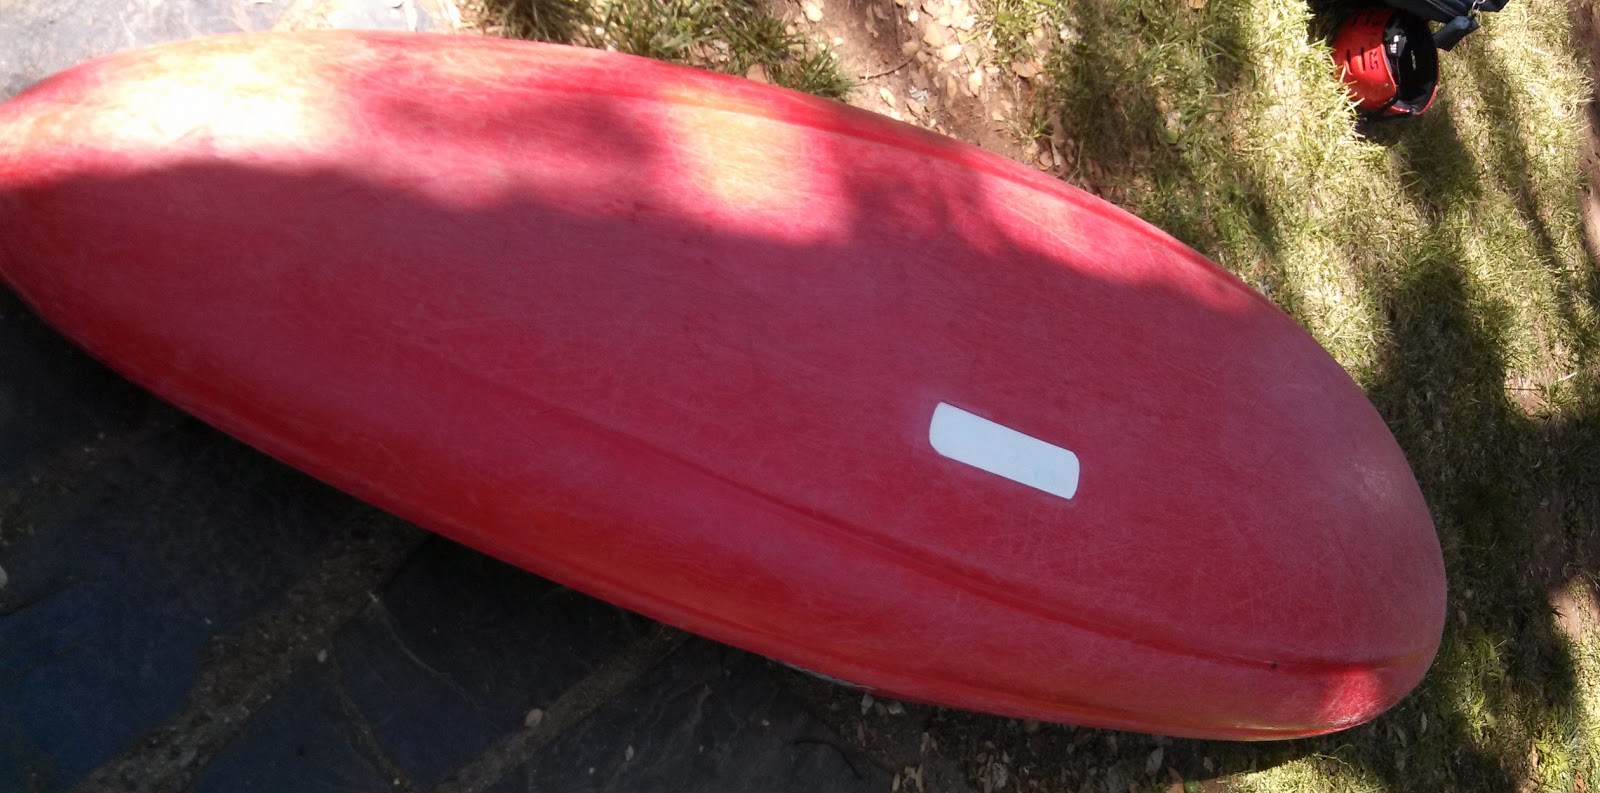 Repairing a plastic kayak